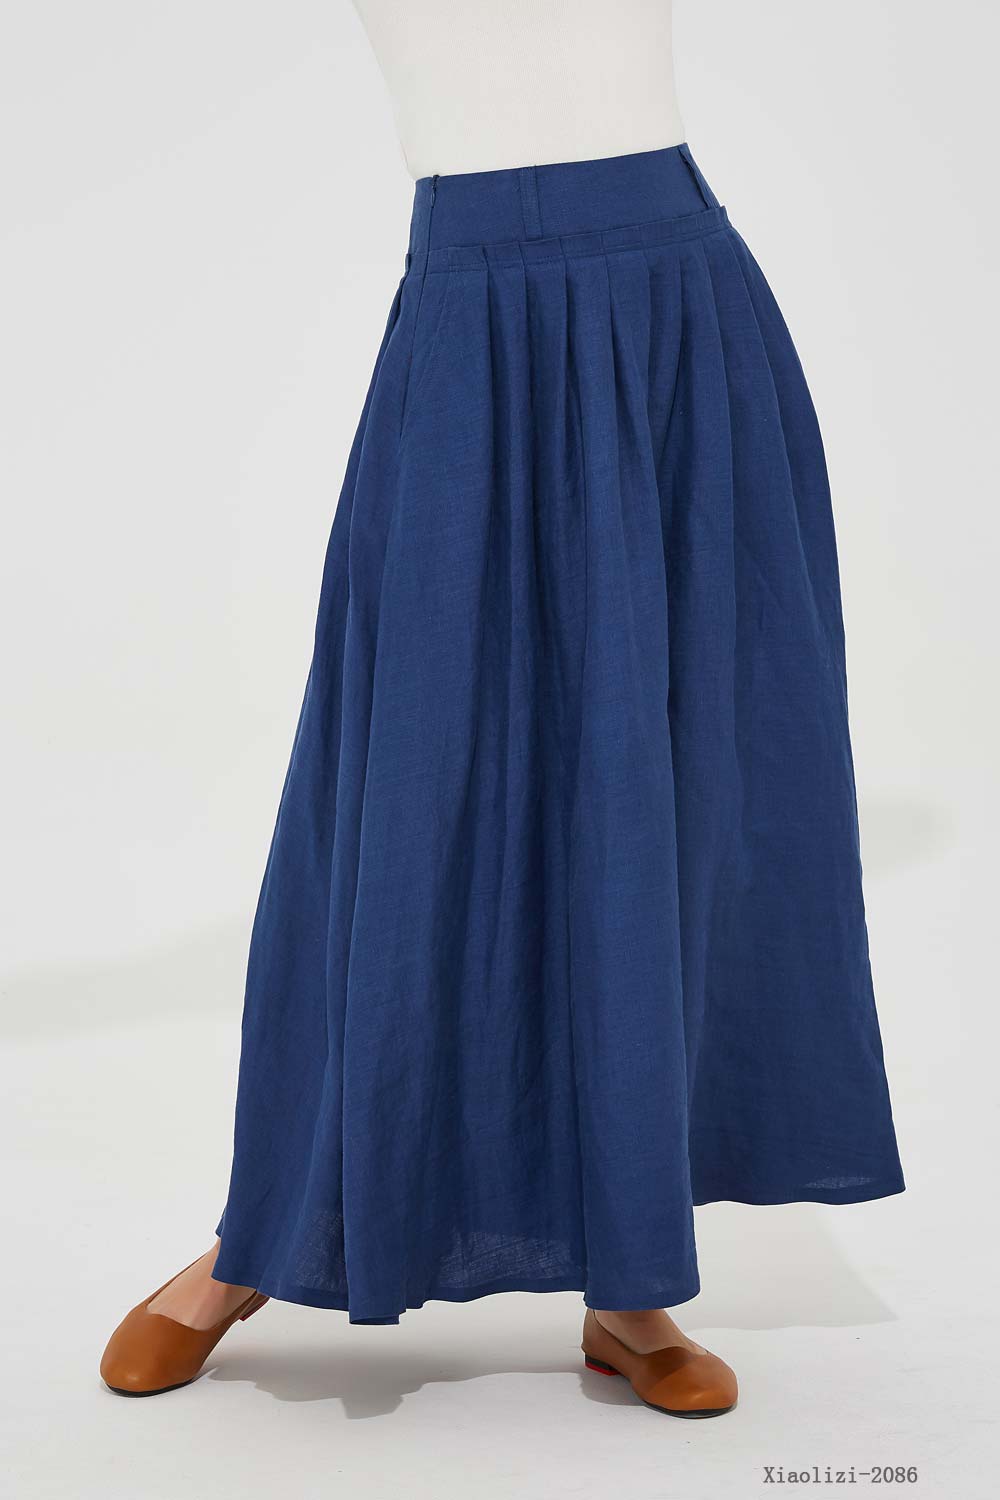 elegant skirt